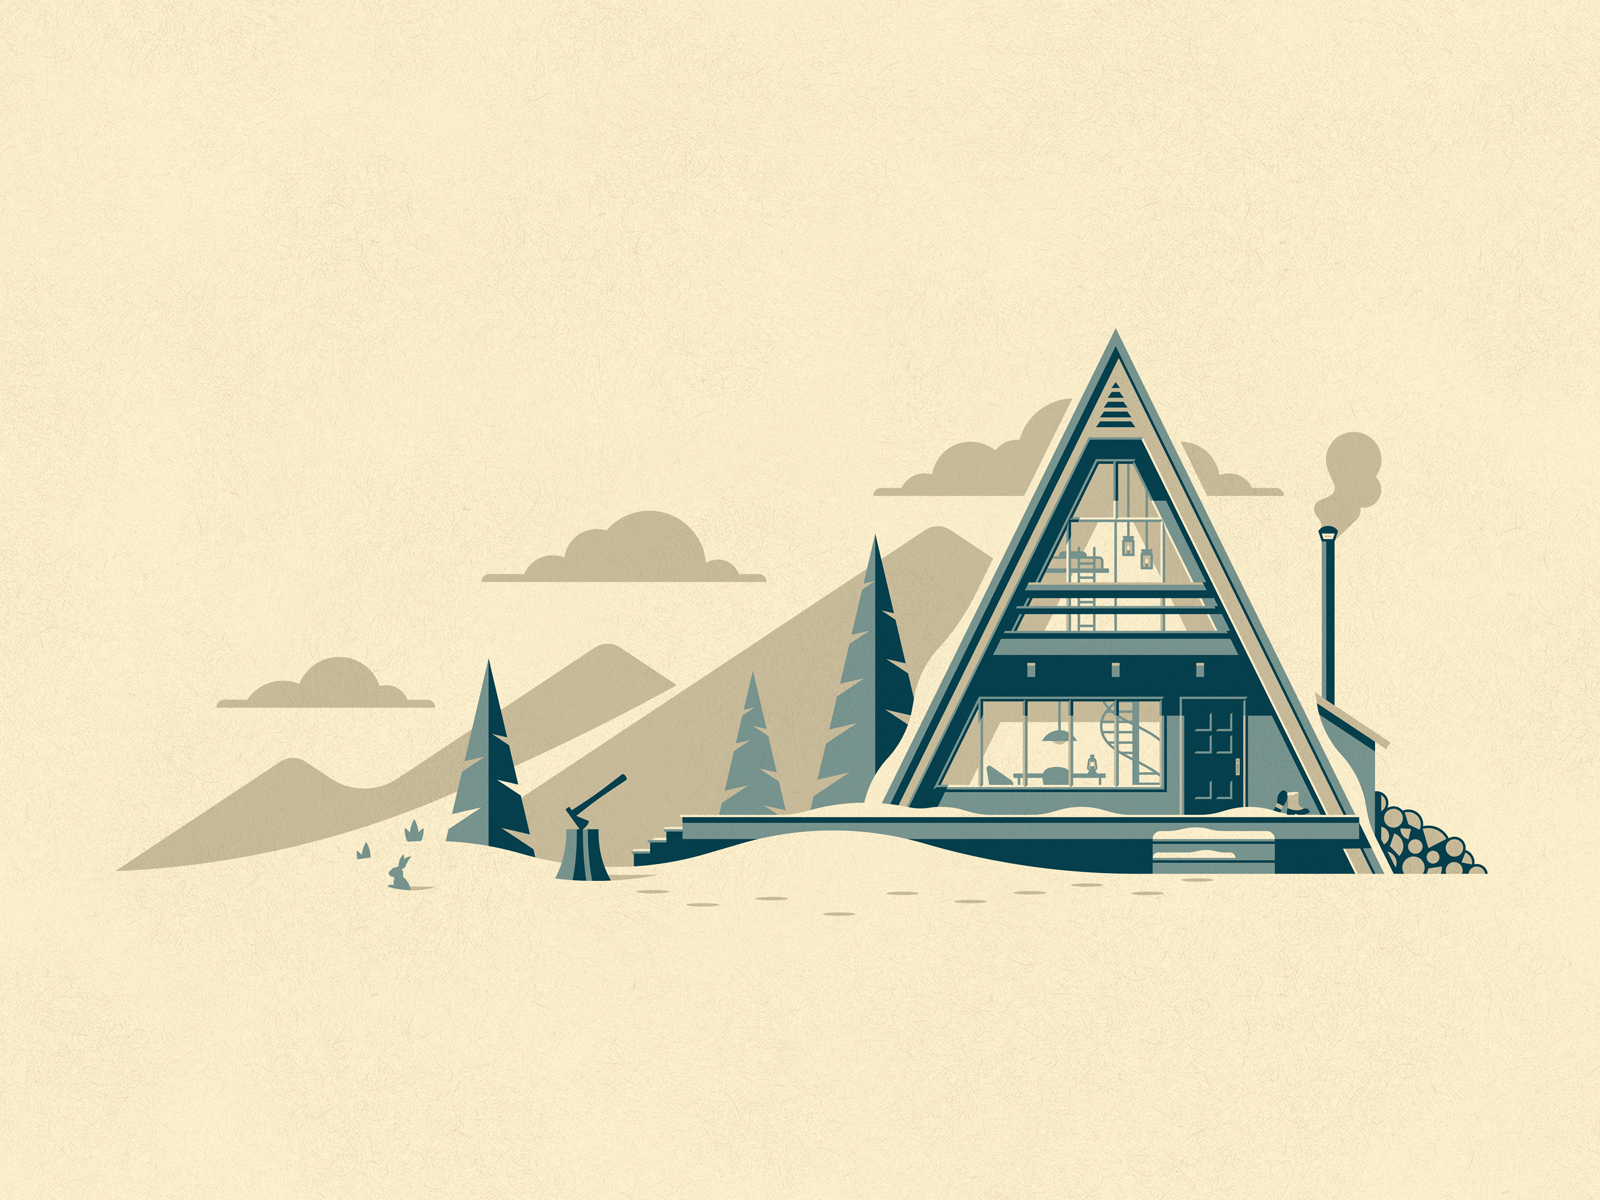 winter cabin illustration